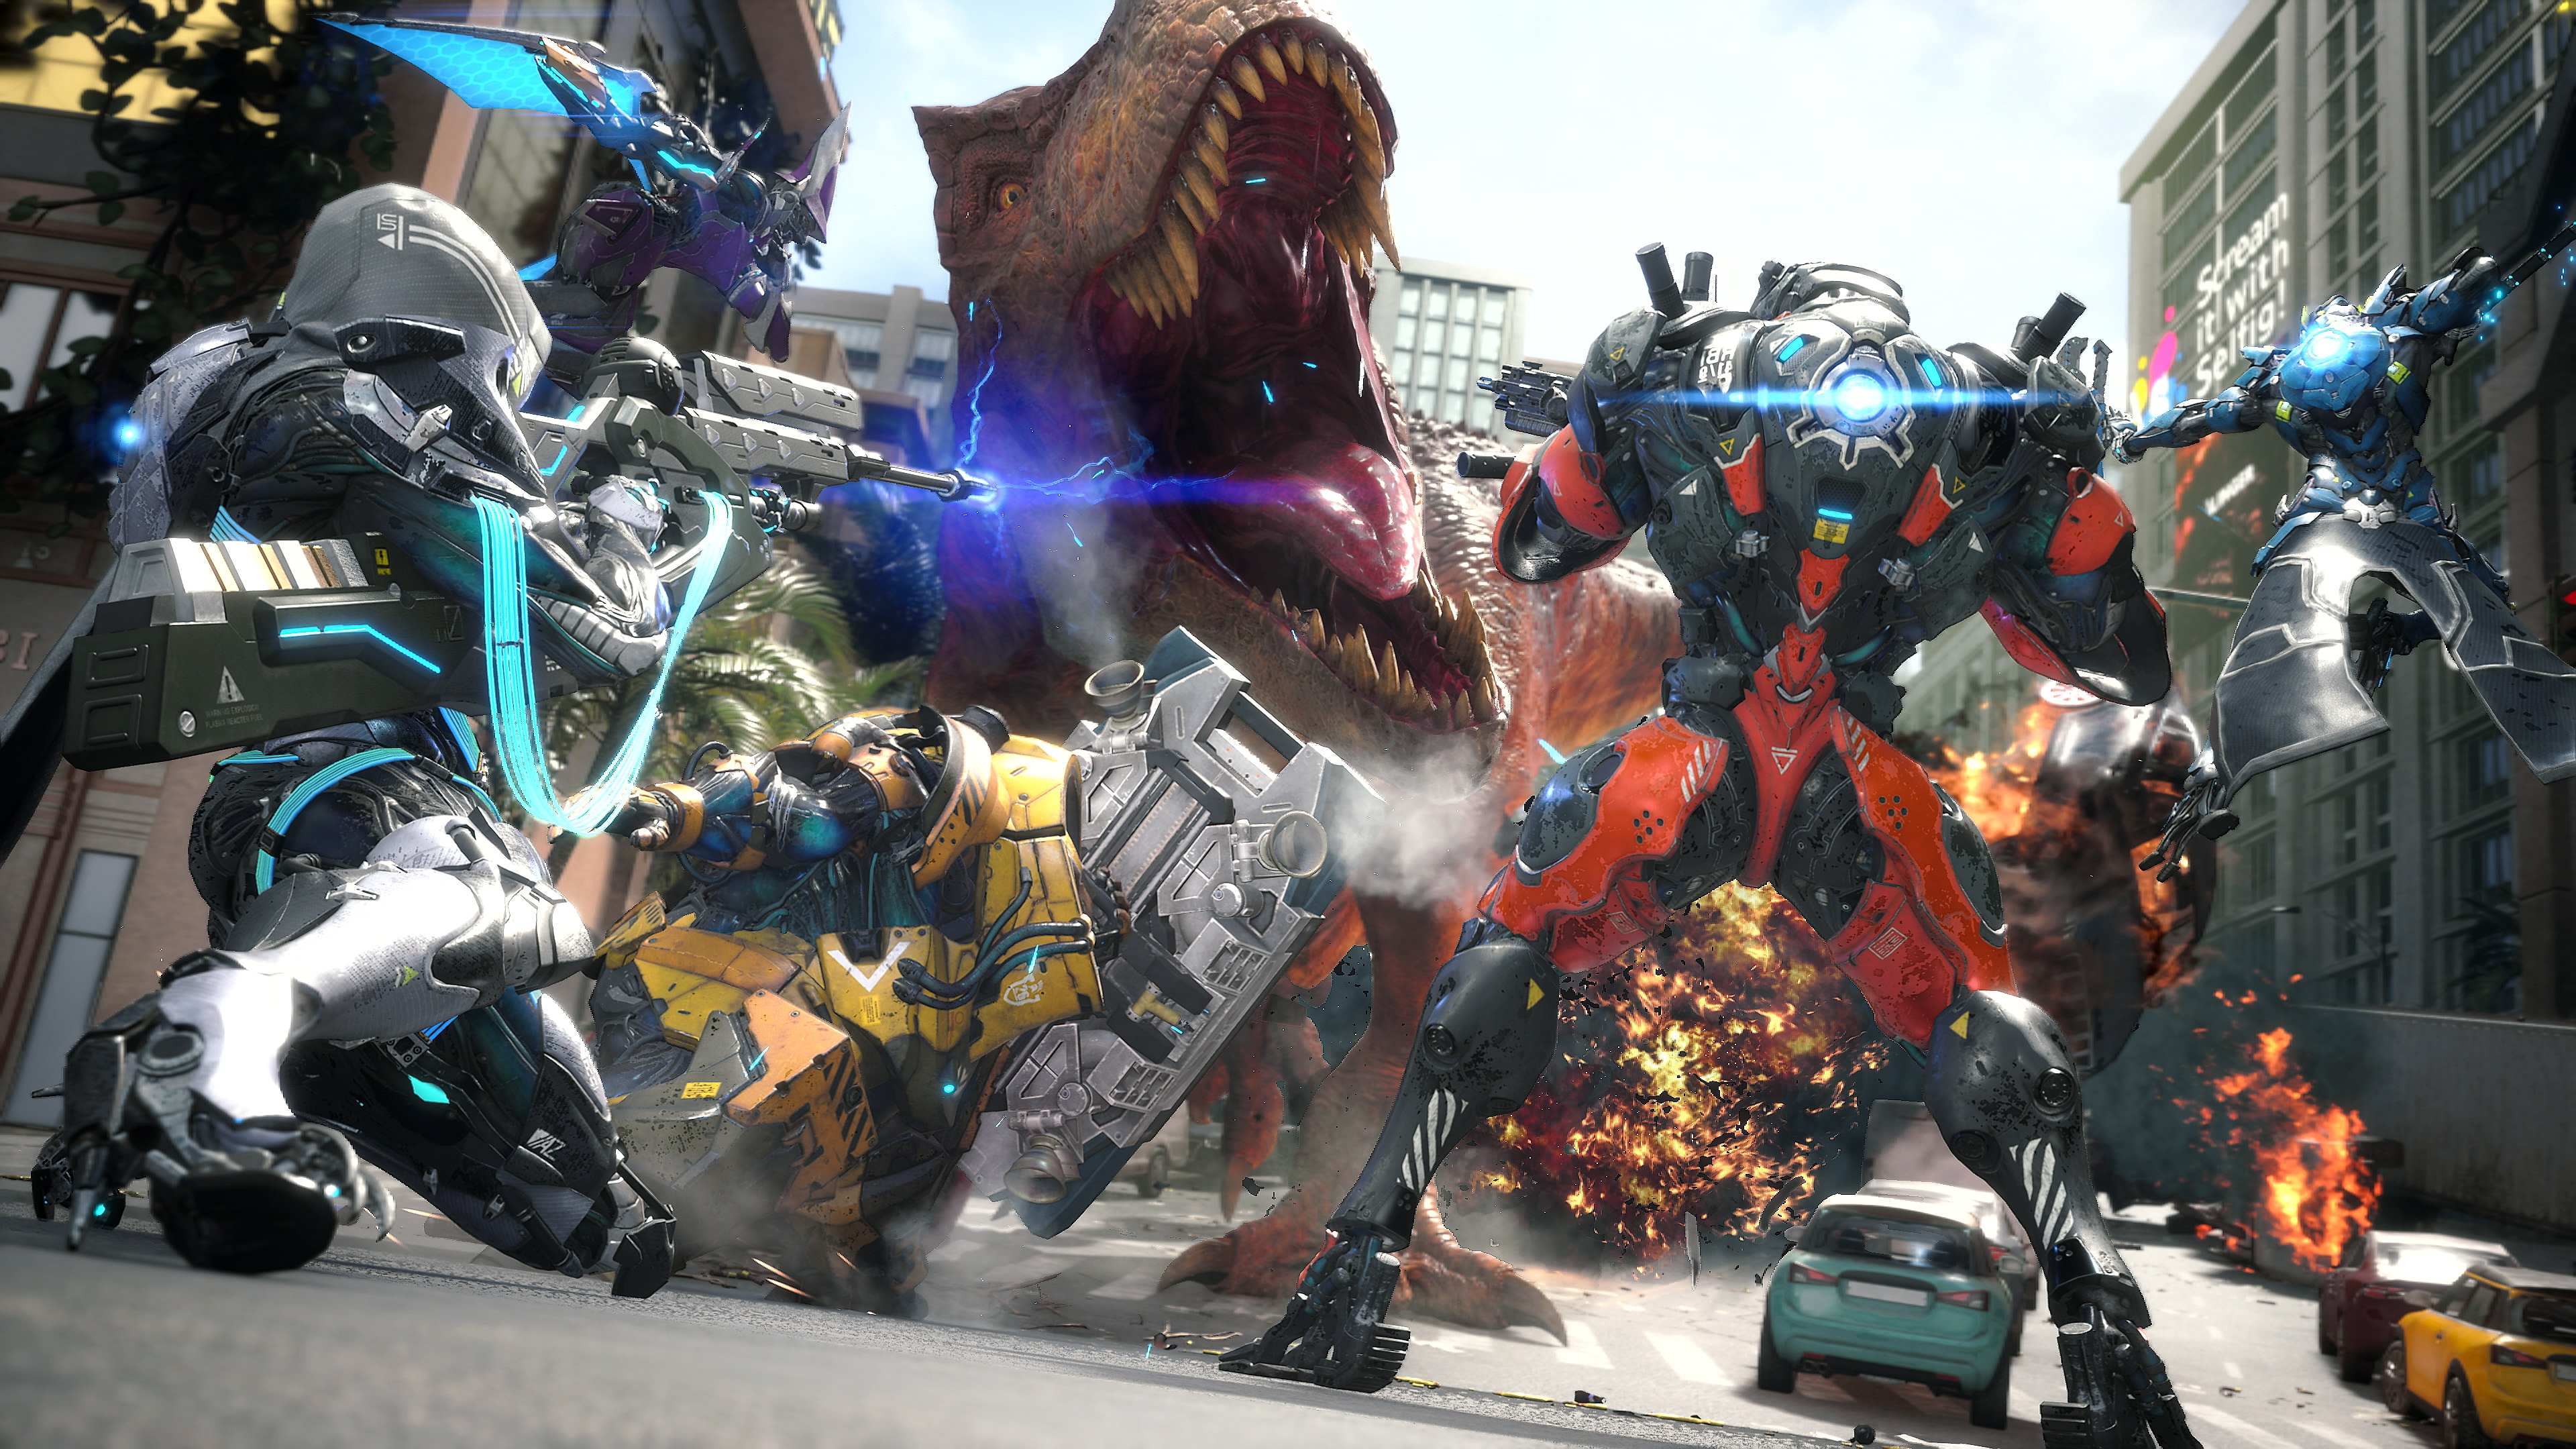 لقطة شاشة للعبة Exoprimal يظهر فيها ديناصور T-Rex يهاجم شخصيات آلية يطلق عليها اسم الدروع الخارجية